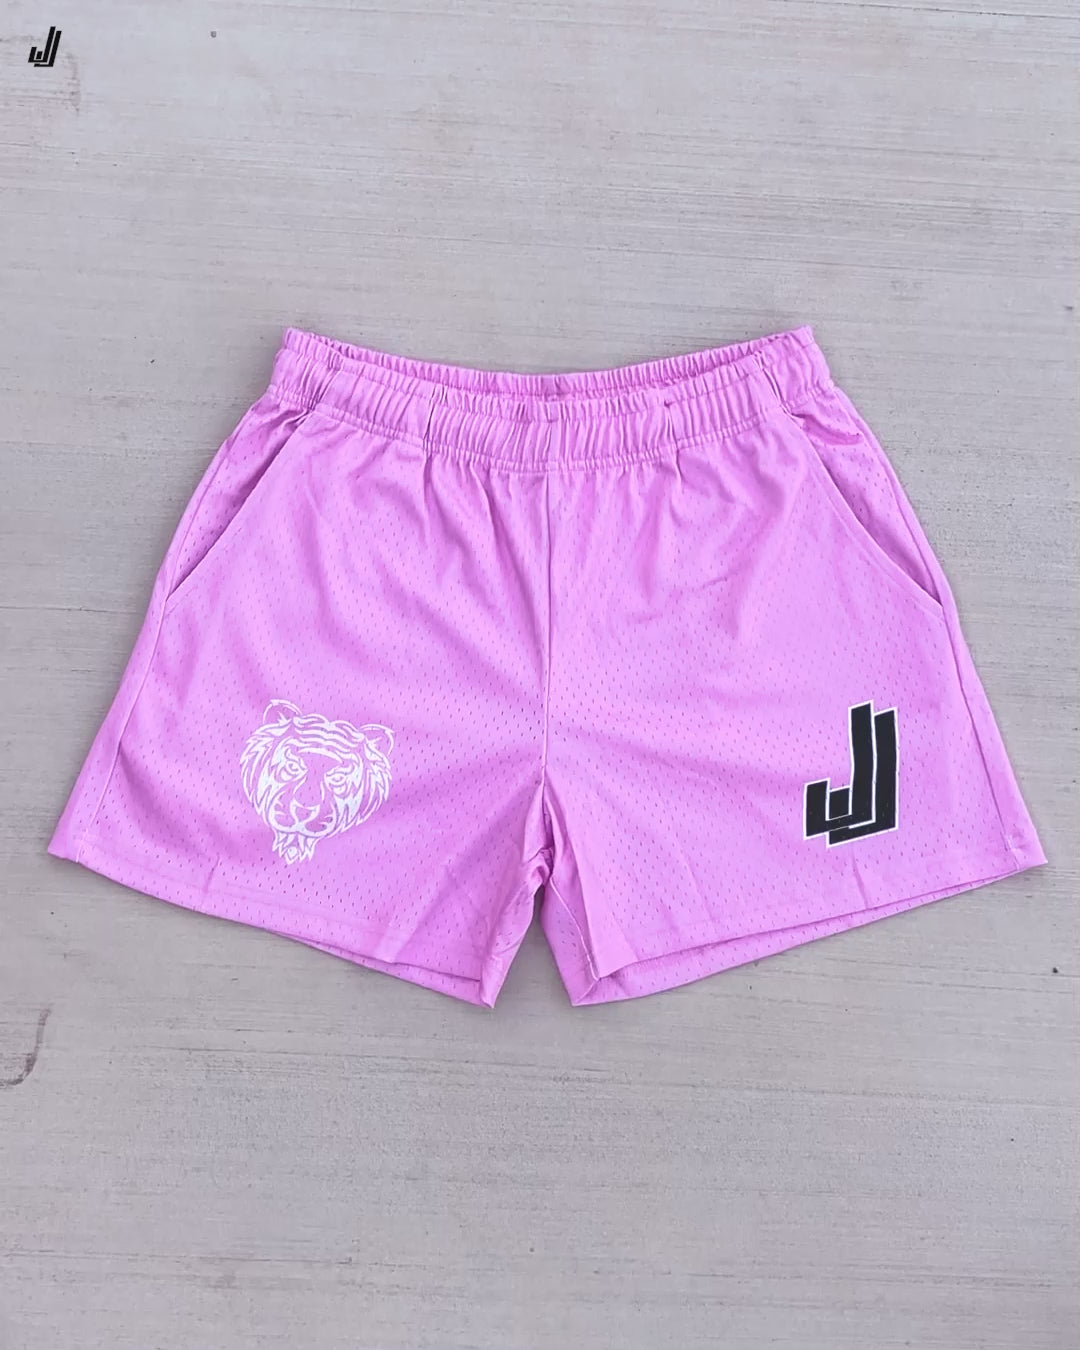 Pink - Premium Mesh JJ Shorts - 5 Inch Inseam - Vintage Gym